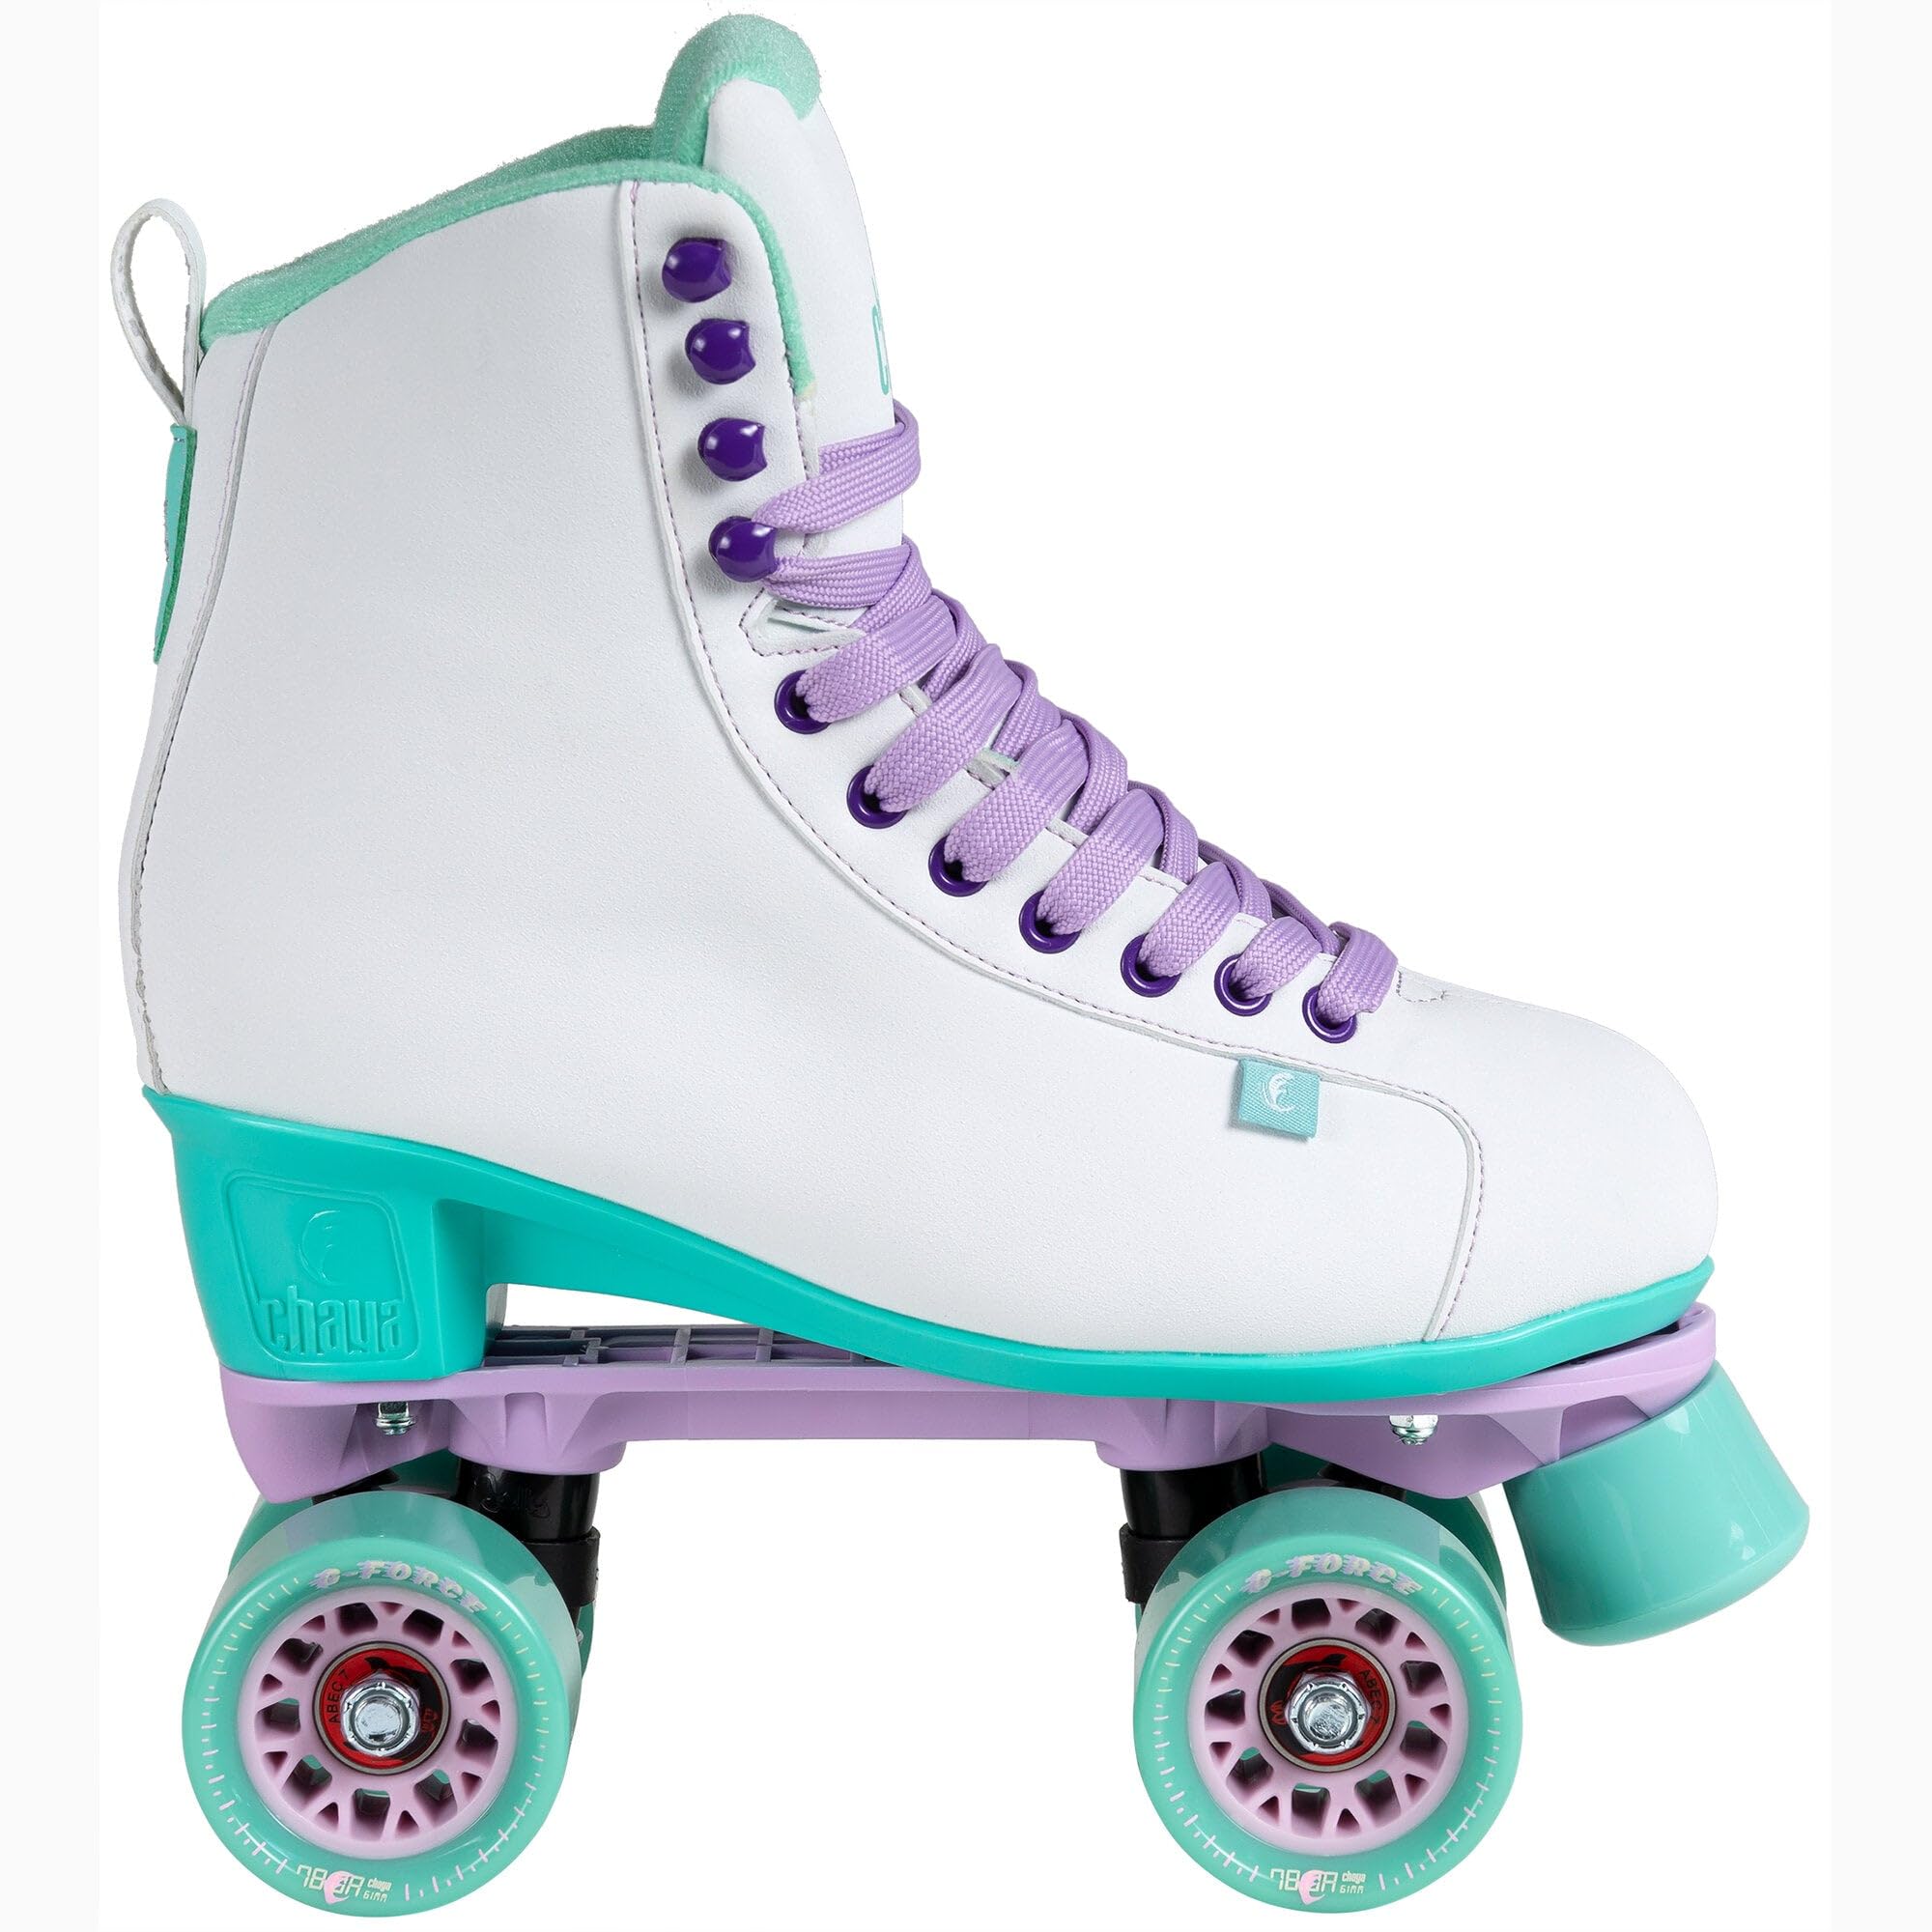 Chaya Roller Skates Melrose White für Damen in Weiß/Grün, 61mm/78A Rollen, ABEC 7 Kugellager, Art. nr.: 810668